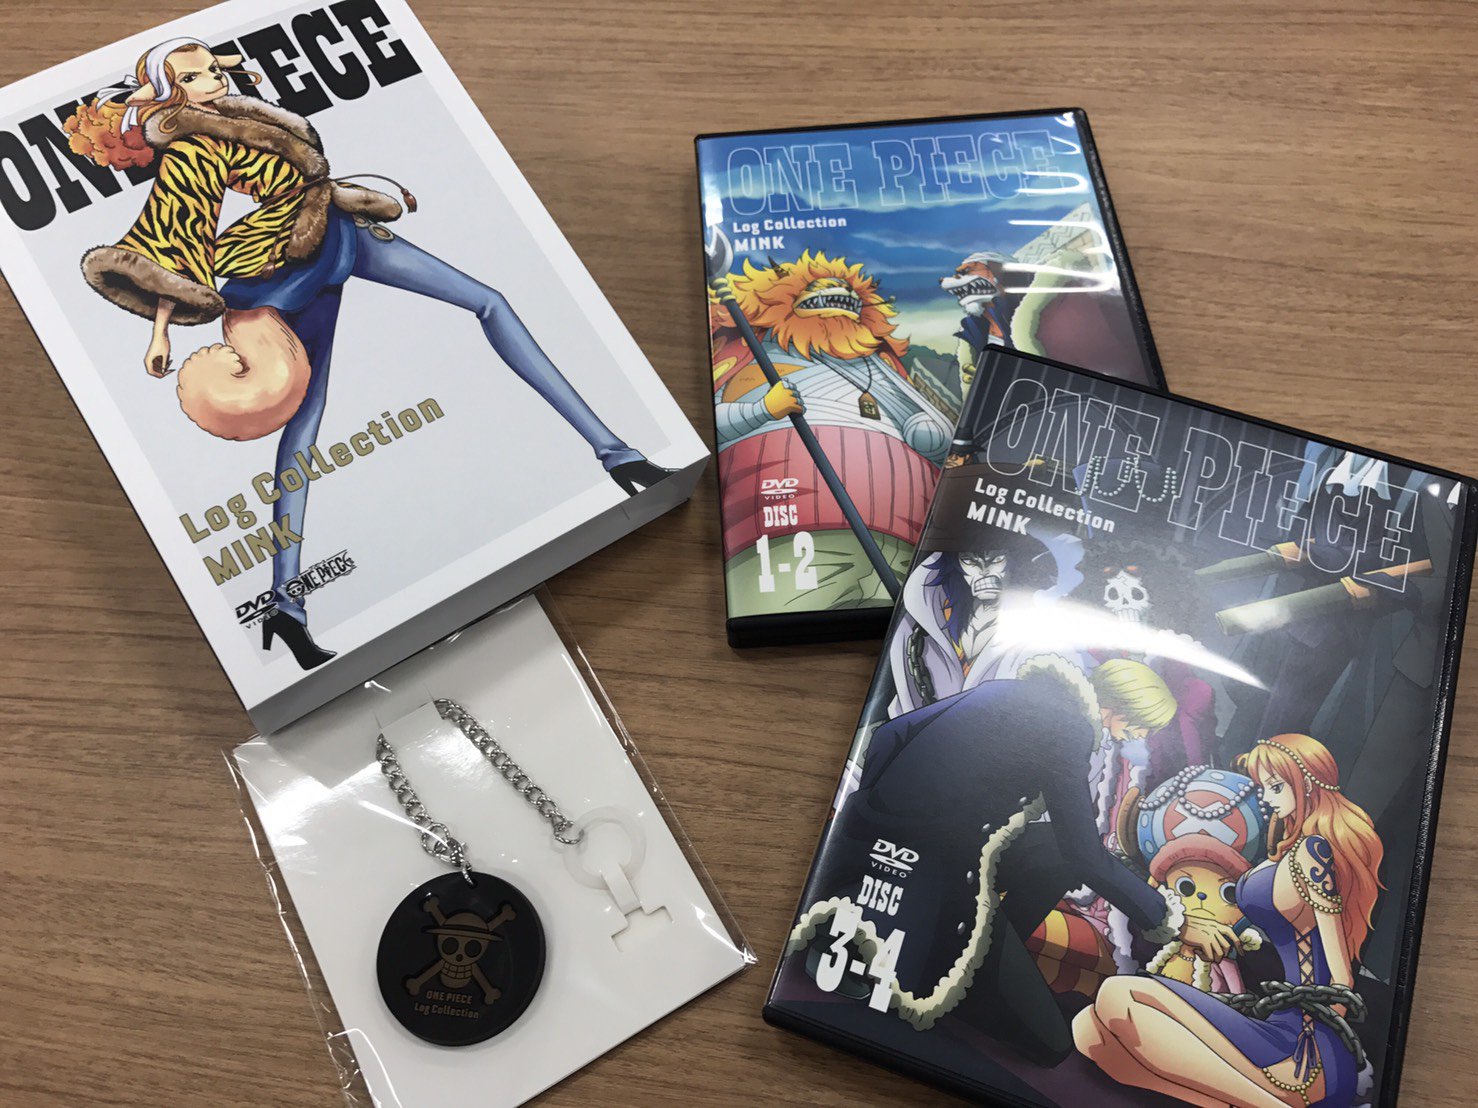 専門ショップ One Piece Log Collection Mink Dvd アニメ アニメ